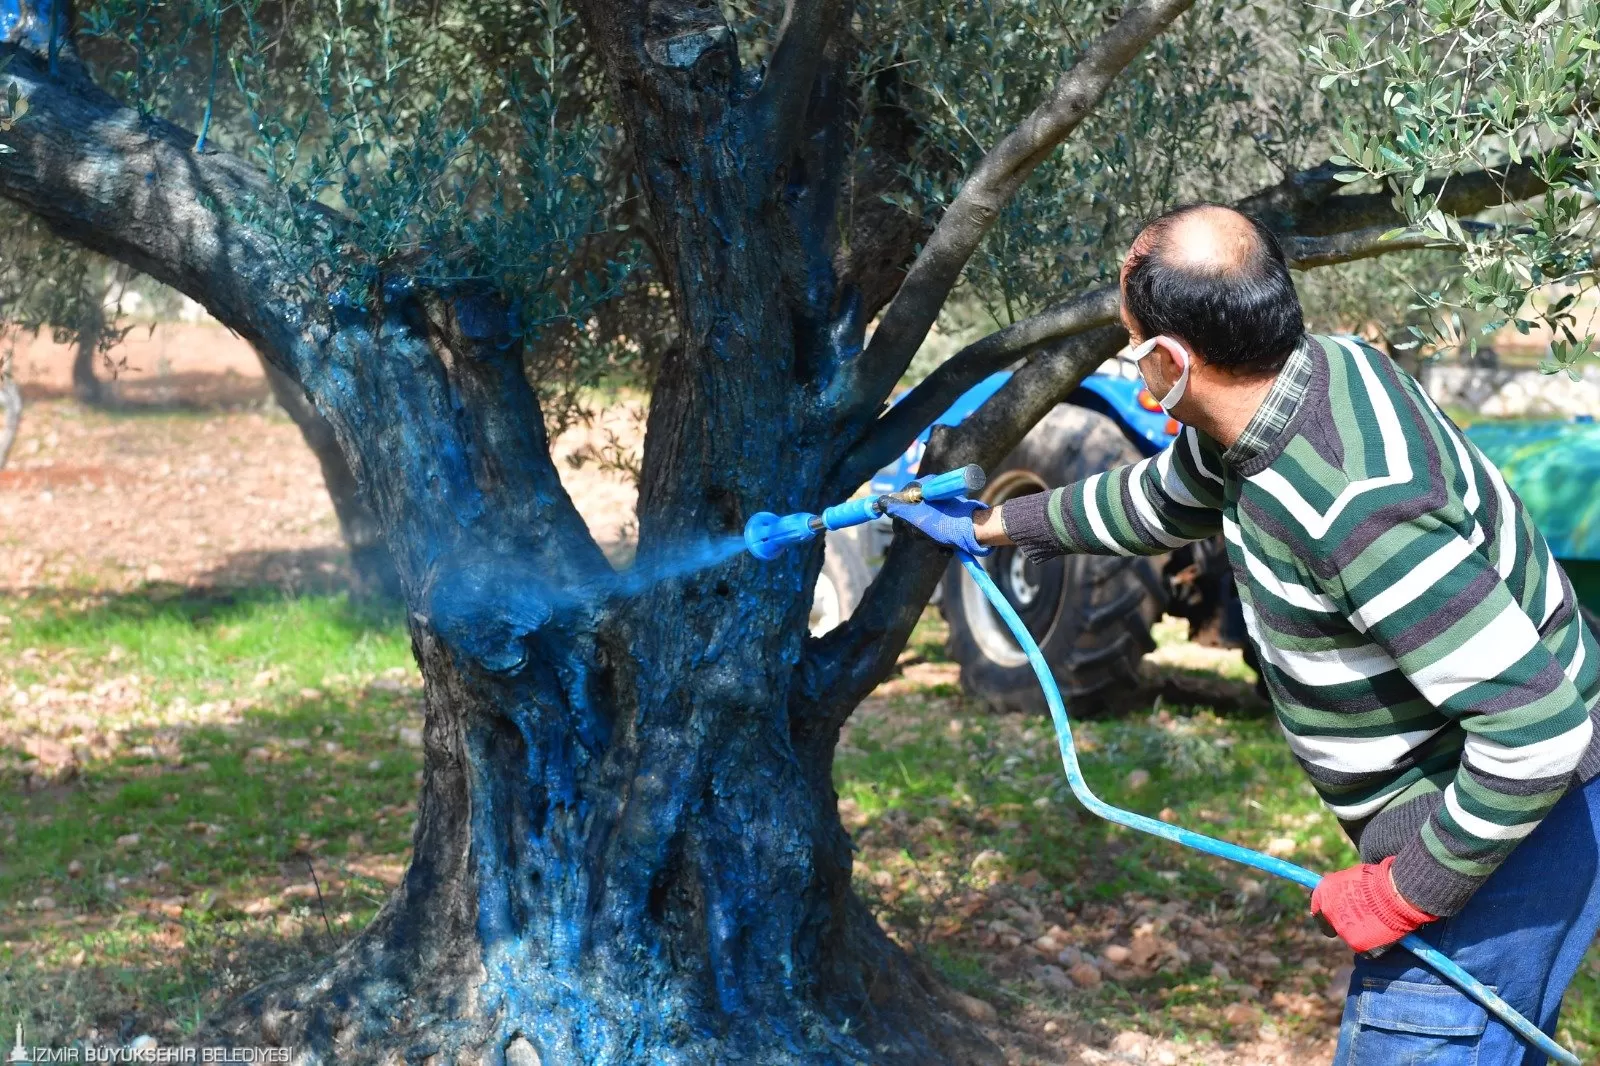 İzmir Büyükşehir Belediyesi, "Başka Bir Tarım Mümkün" vizyonuyla zeytin ağaçlarında "Halkalı Leke" hastalığıyla mücadele için 862 üreticiye 58 ton bordo bulamacı hibe etti.